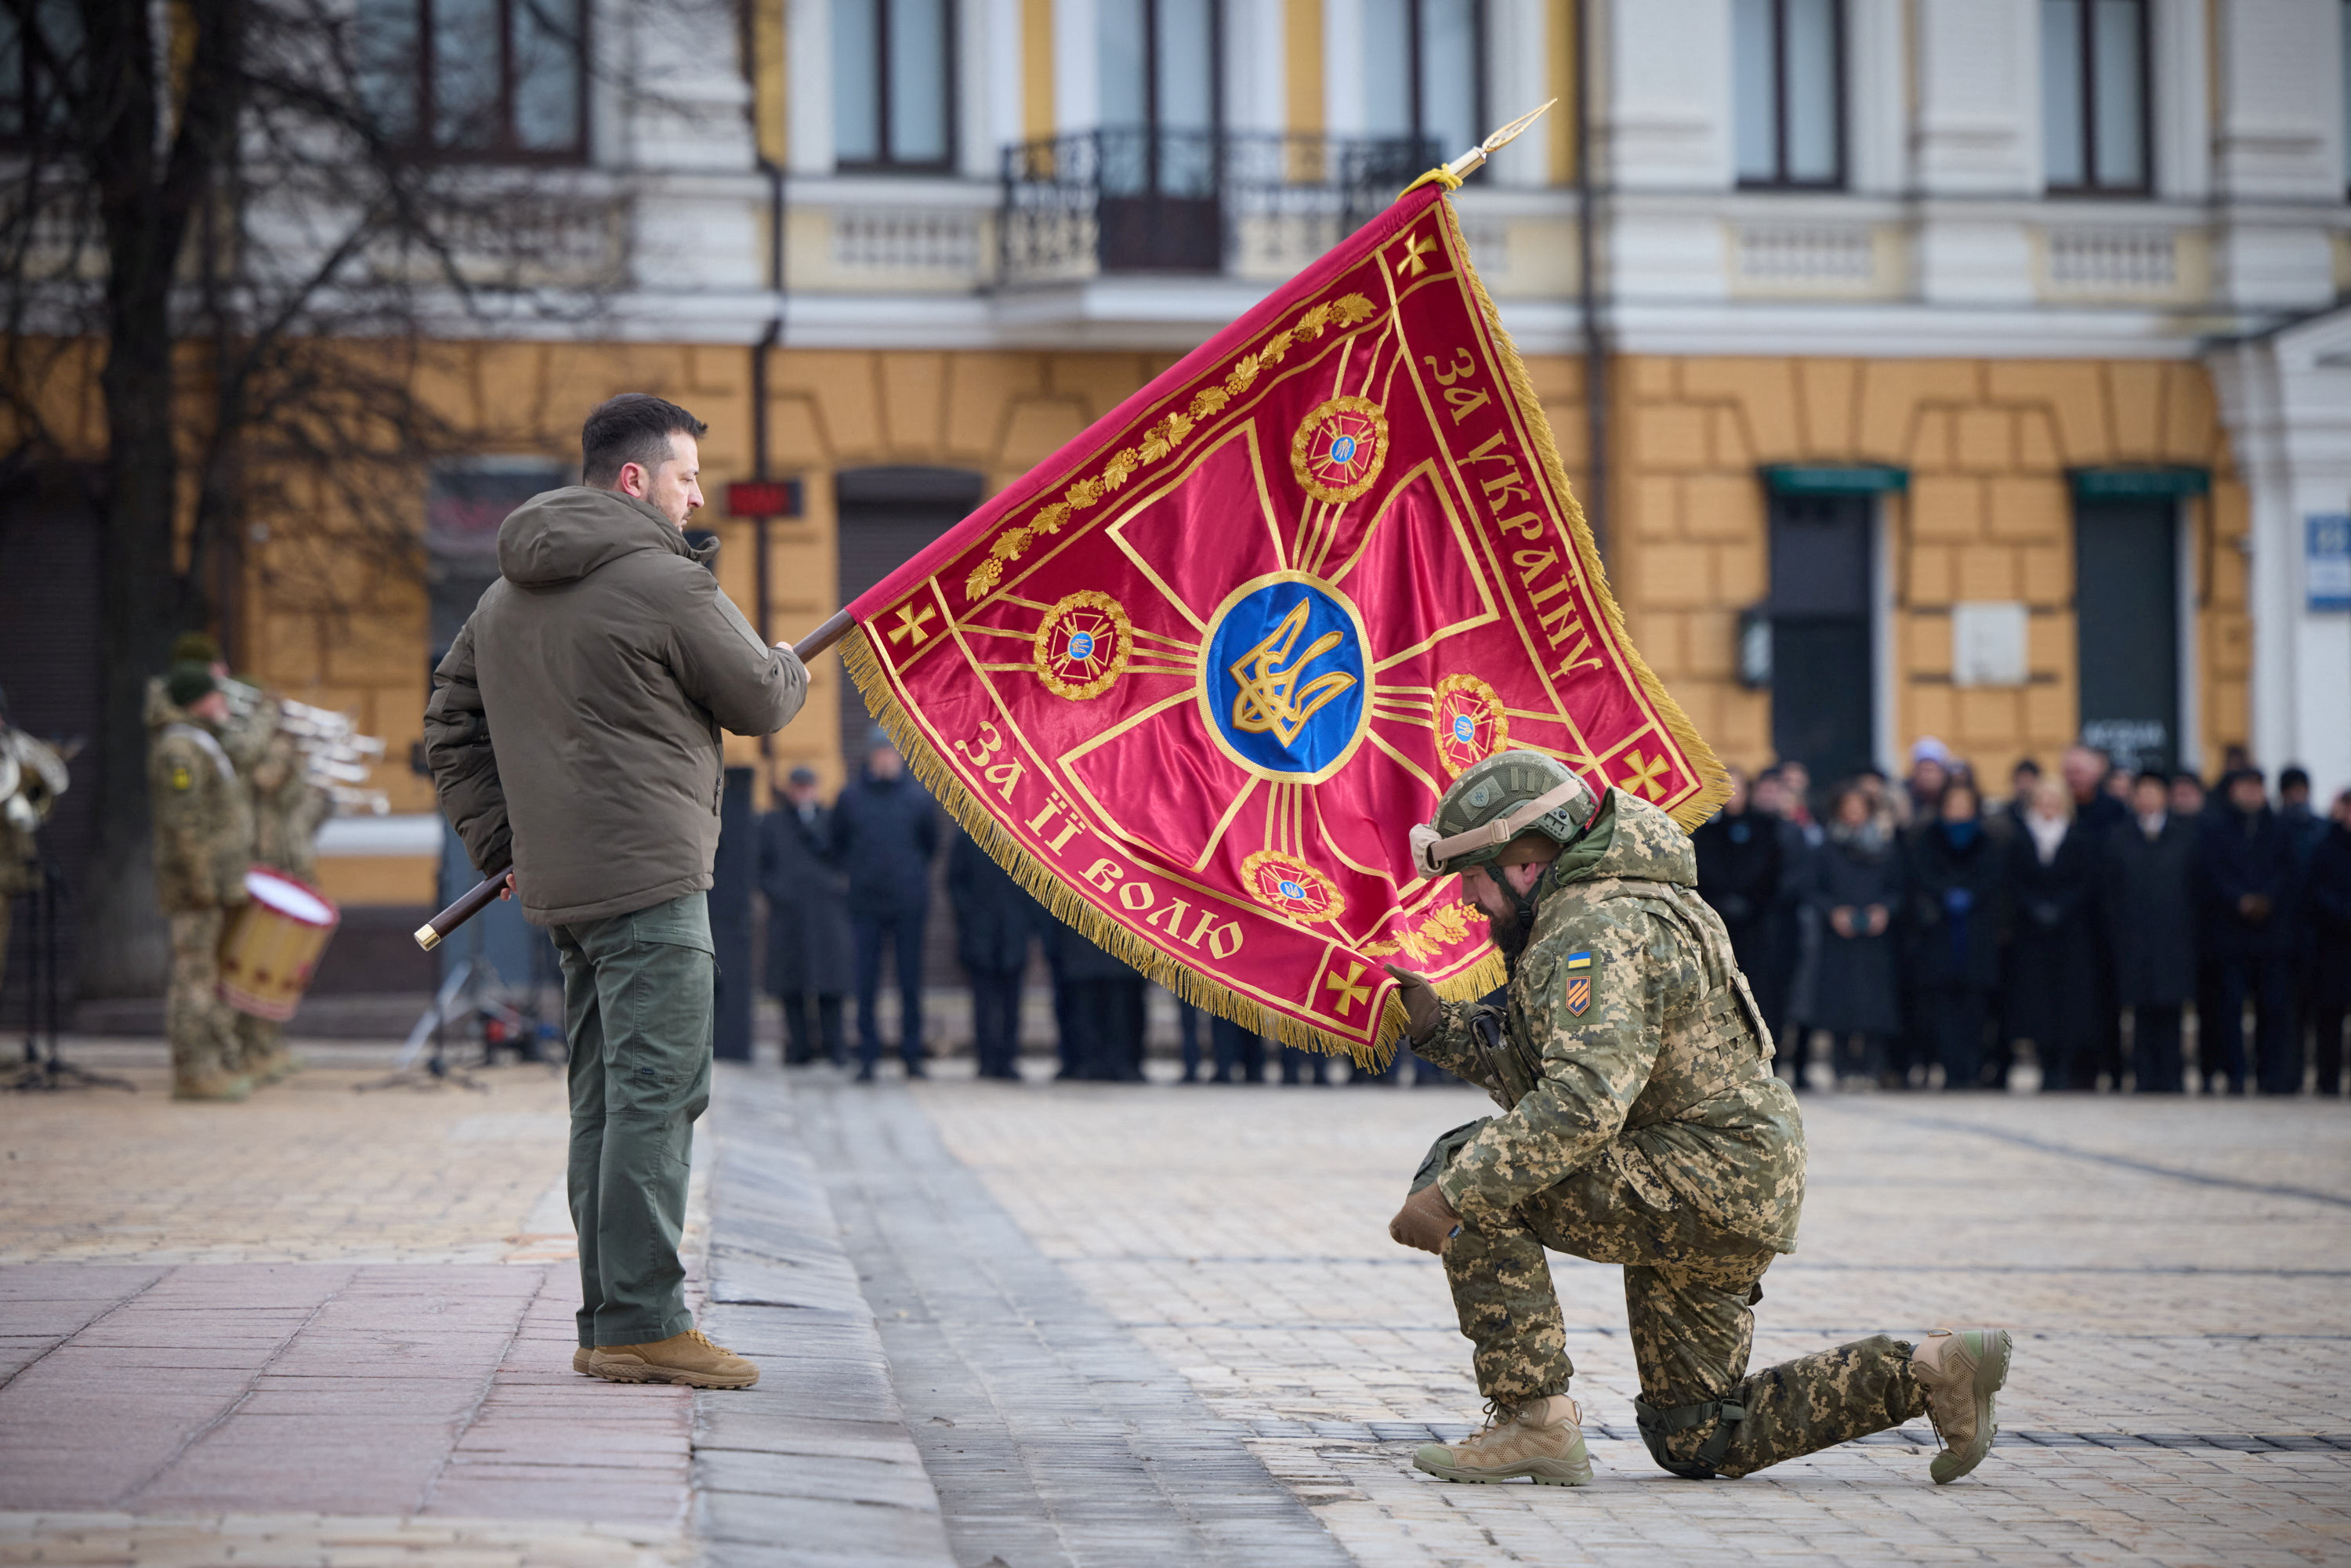 El presidente ucraniano Volodimir Zelensky ondea una bandera sobre un soldado durante una ceremonia por el primer aniversario de la invasión rusa a su país en Kiev (Presidential Press Service/Handout via REUTERS)